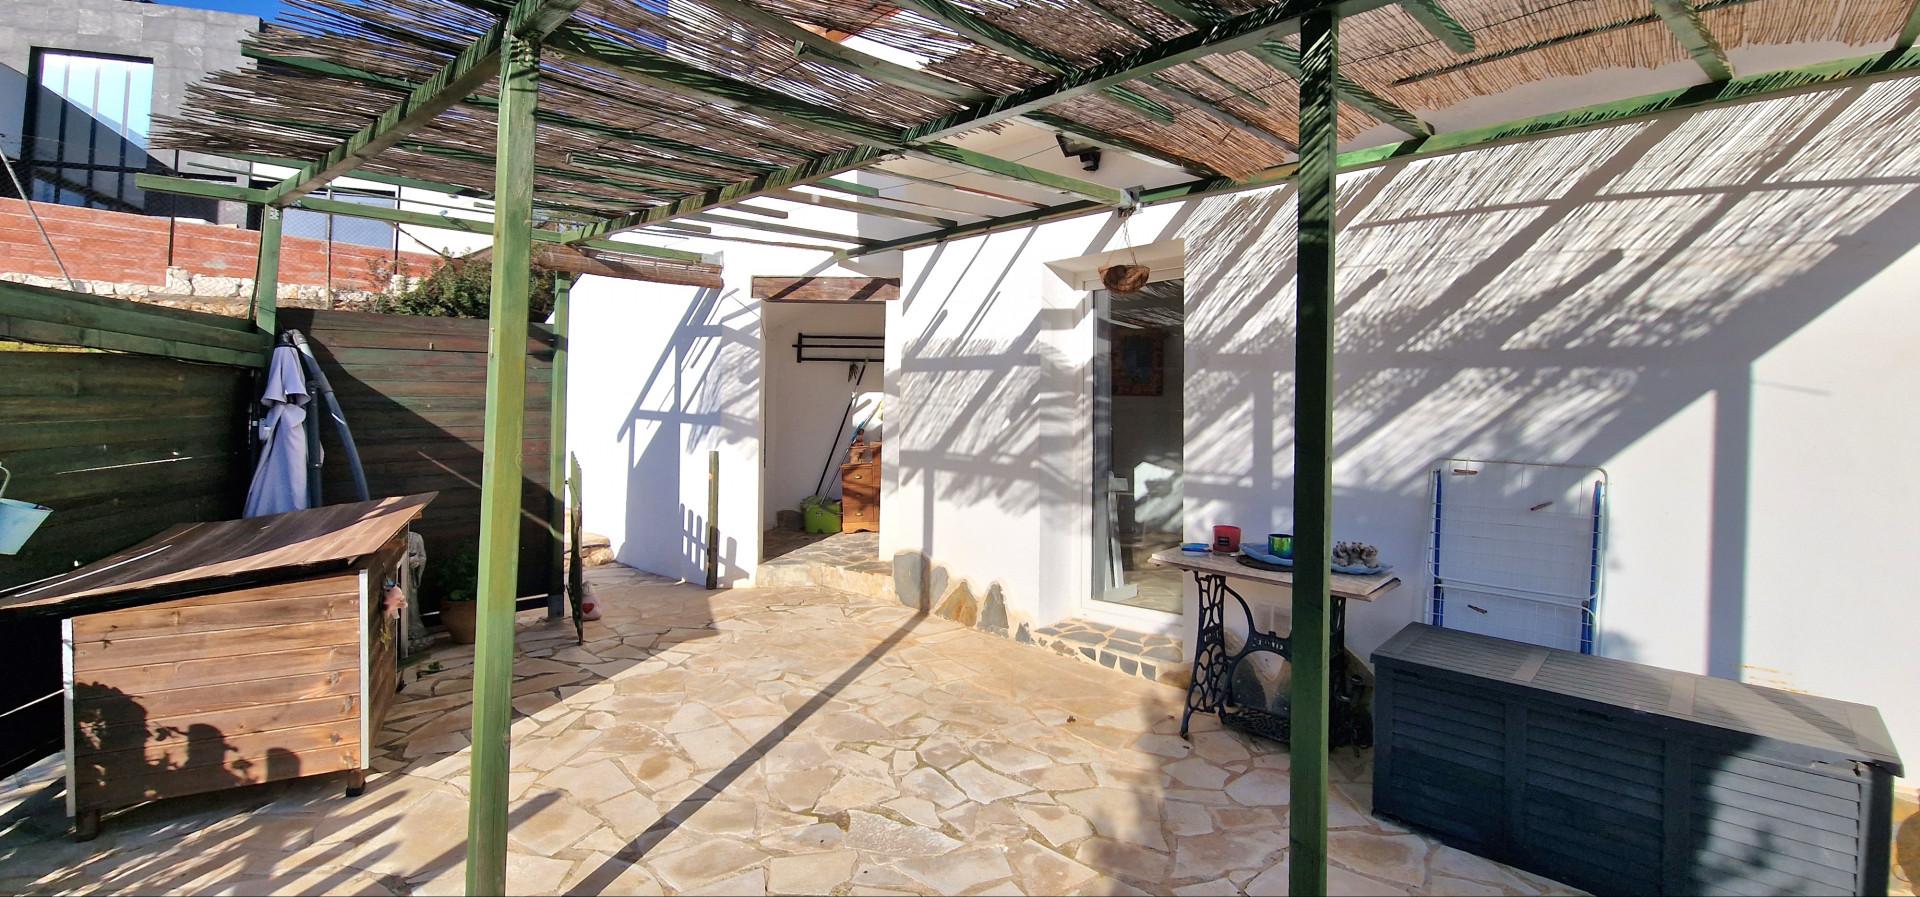 Villa de estilo ibicenco en venta en Cumbre del Sol